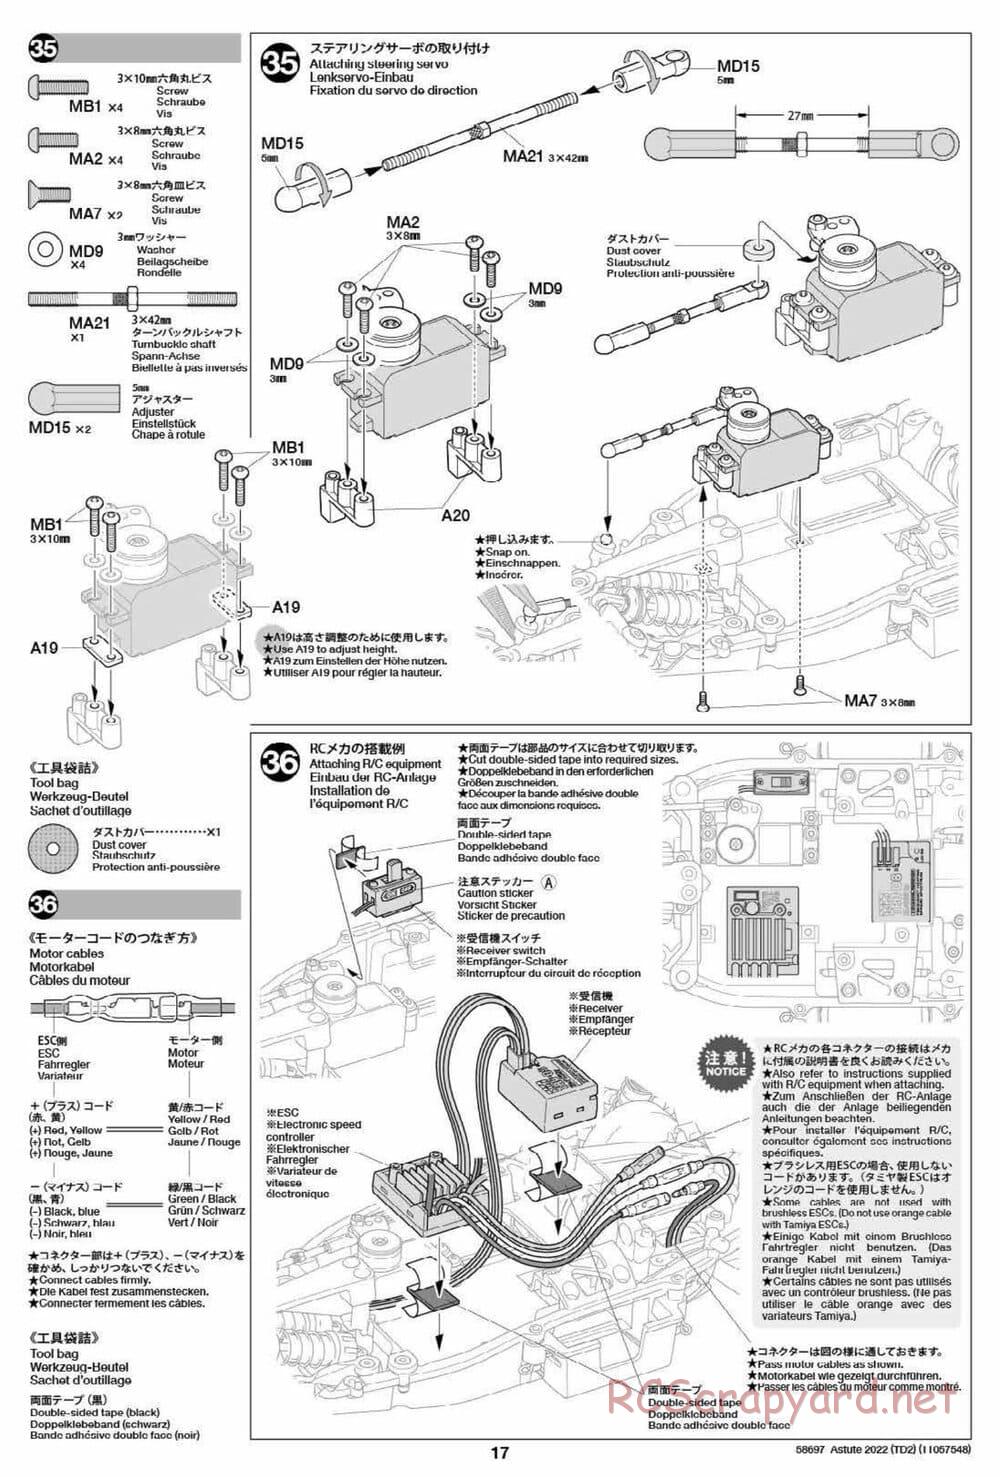 Tamiya - Astute 2022 - TD2 Chassis - Manual - Page 17